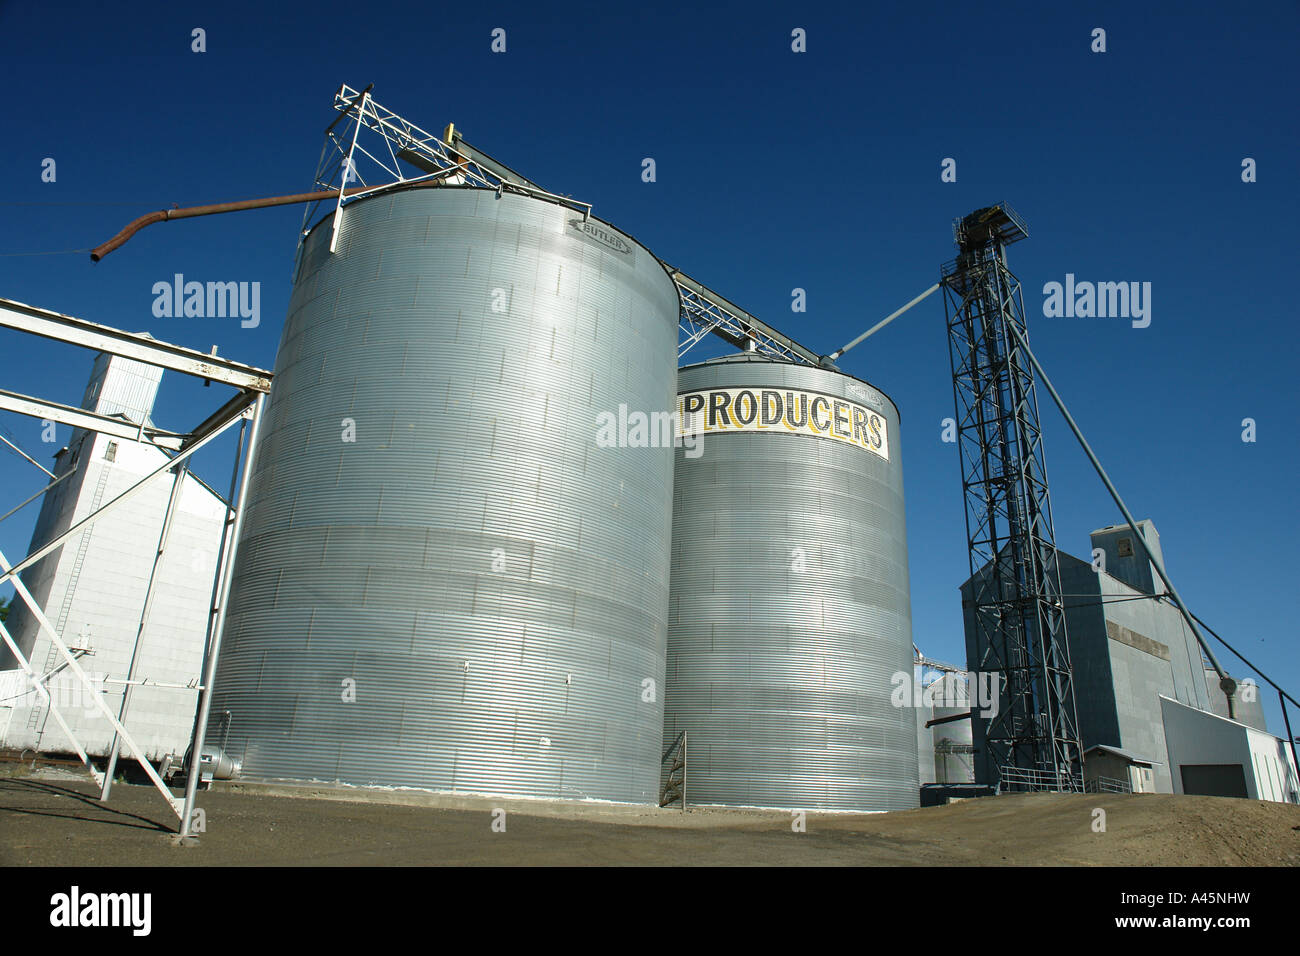 AJD56036 la Palouse, Pays, WA, Washington, Whitman Comté, élévateurs à grain Banque D'Images